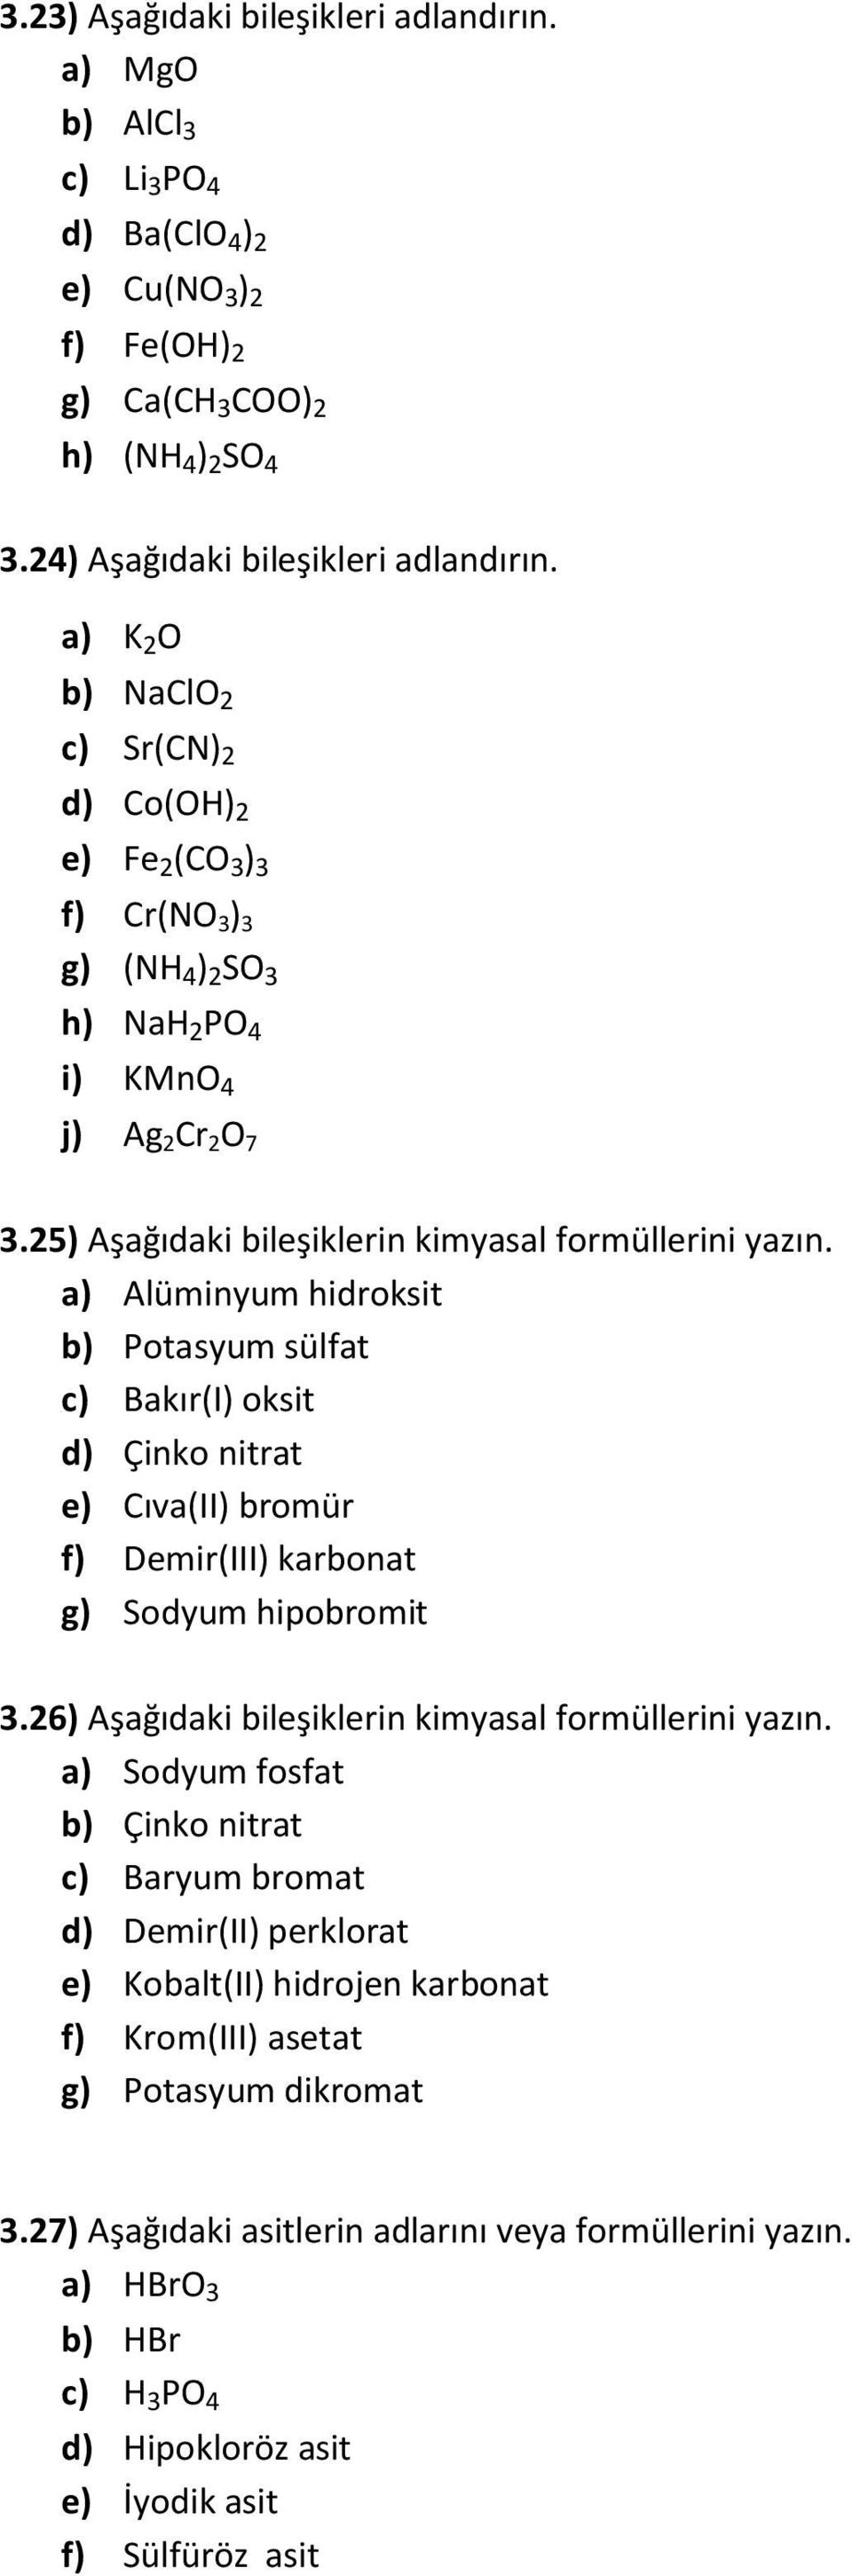 a) Alüminyum hidroksit b) Potasyum sülfat c) Bakır(I) oksit d) Çinko nitrat e) Cıva(II) bromür f) Demir(III) karbonat g) Sodyum hipobromit 3.26) Aşağıdaki bileşiklerin kimyasal formüllerini yazın.